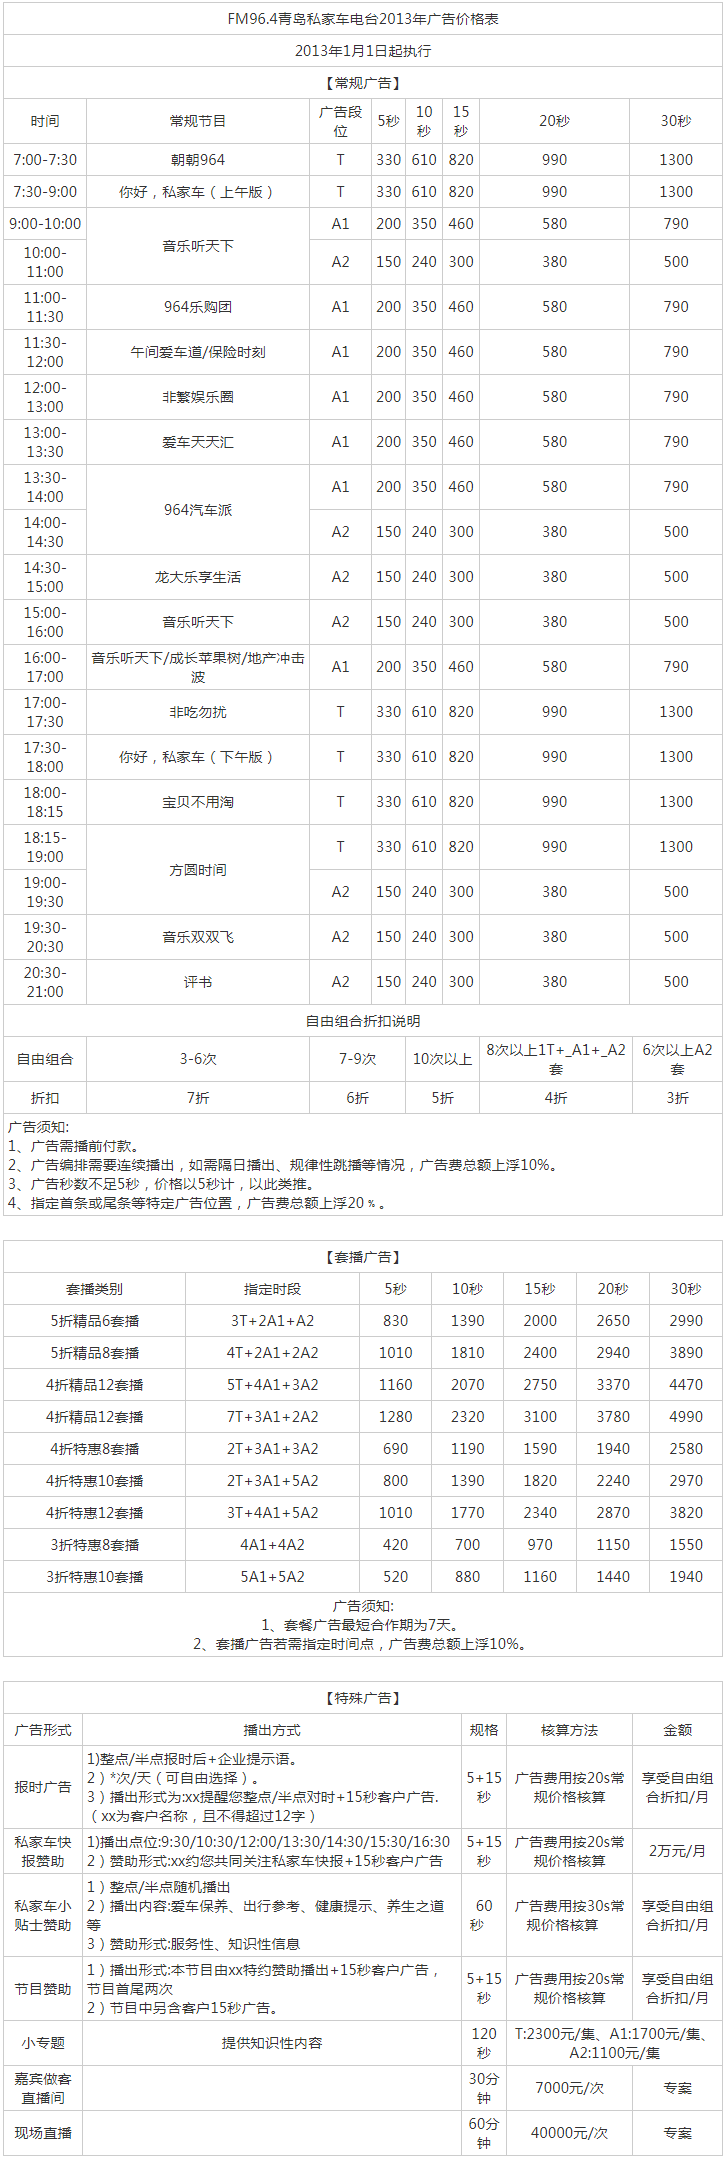 2013青岛人民广播电台私家车电台 FM96.4广告报价表.png